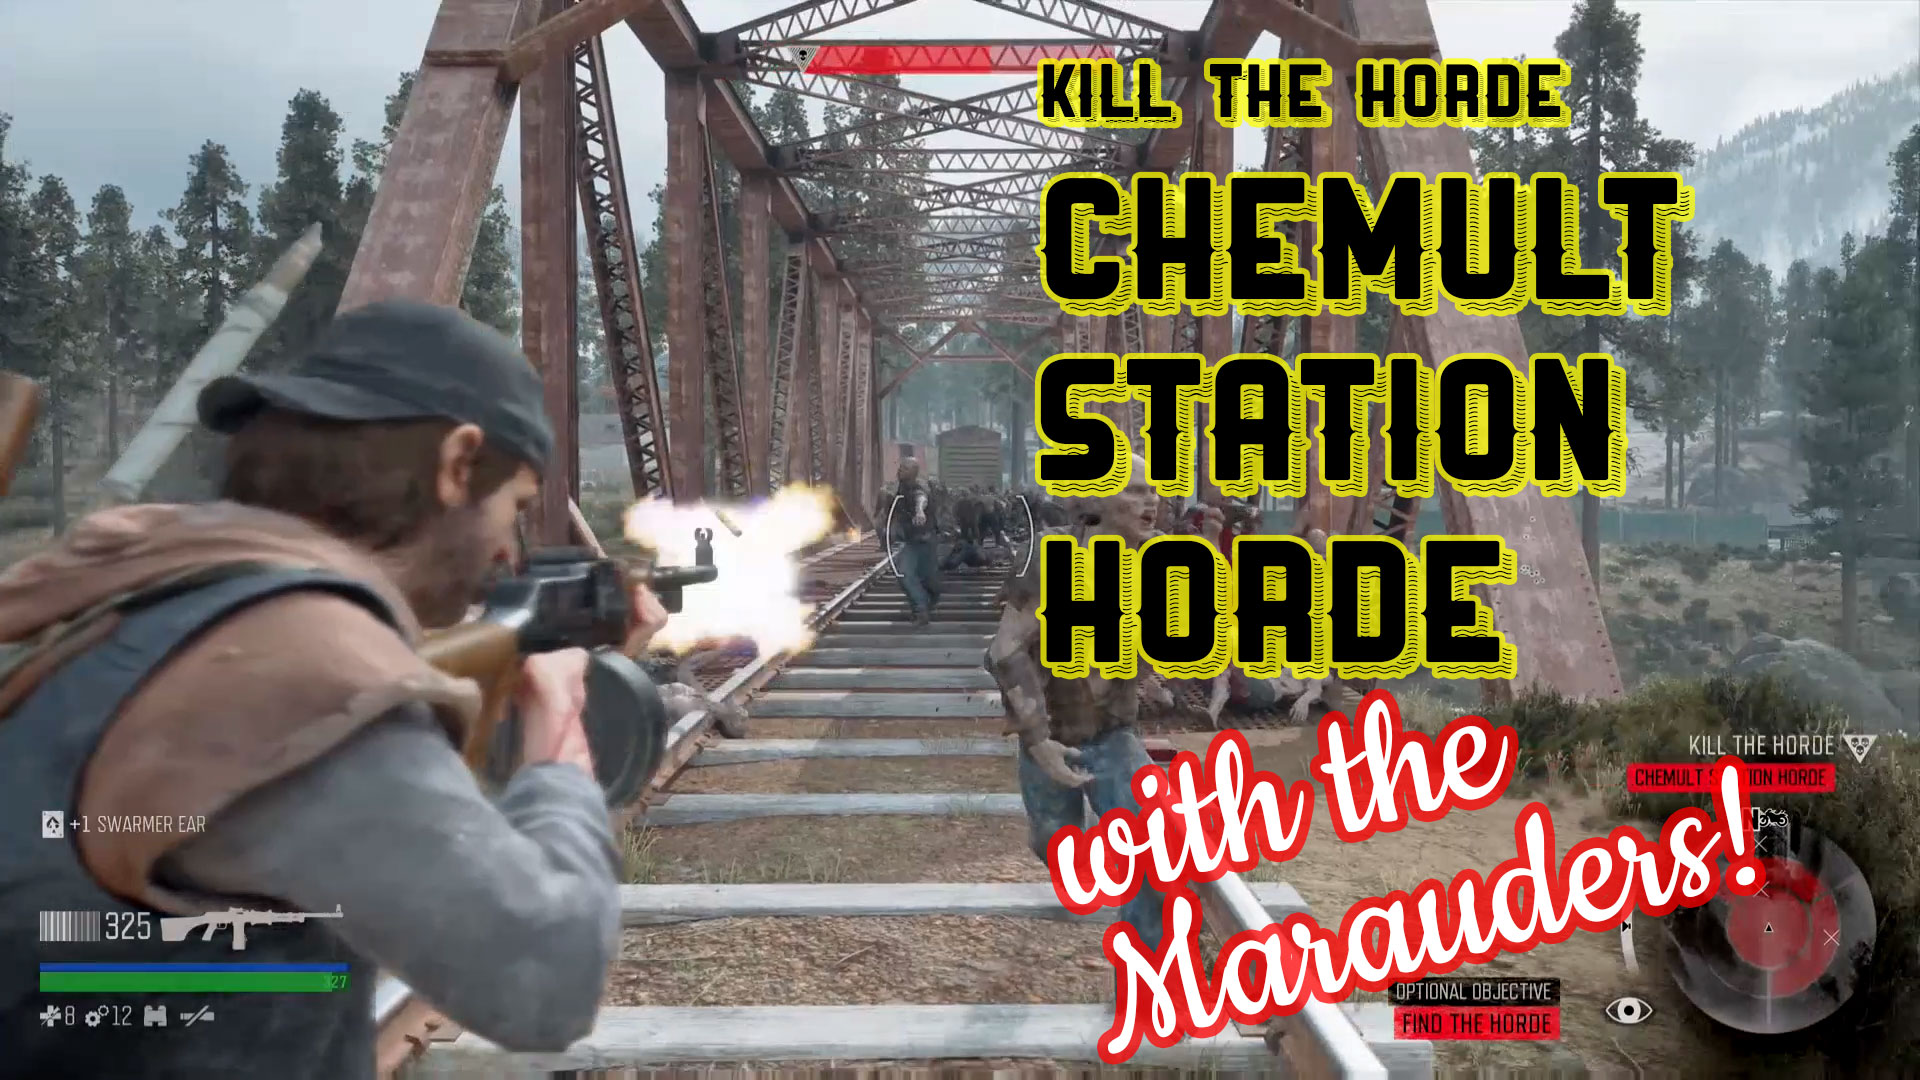 Days Gone – Find the Horde: Chemult Station Horde